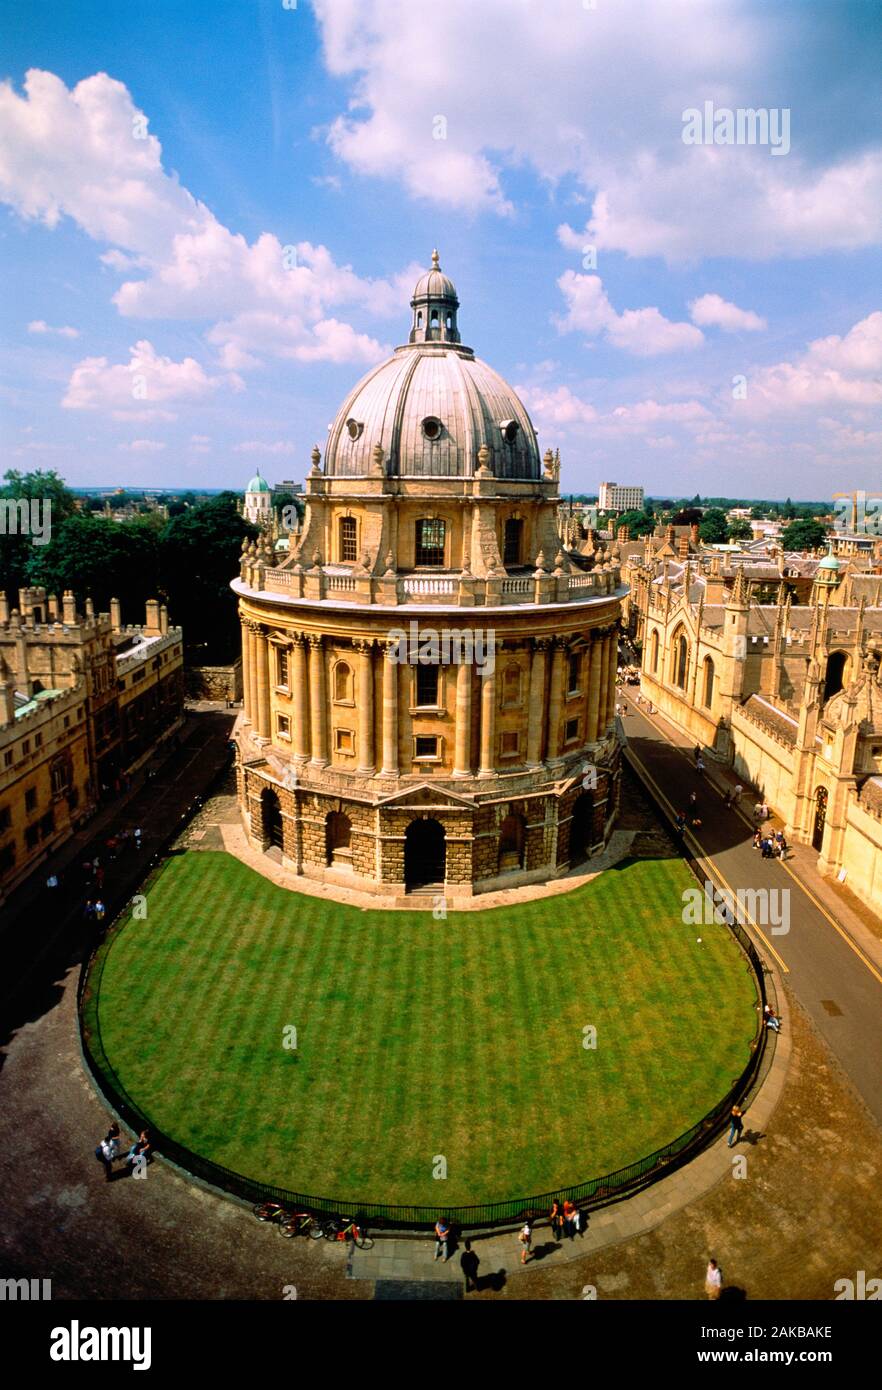 Vue aérienne de la Radcliffe Camera, Oxford, Angleterre Banque D'Images